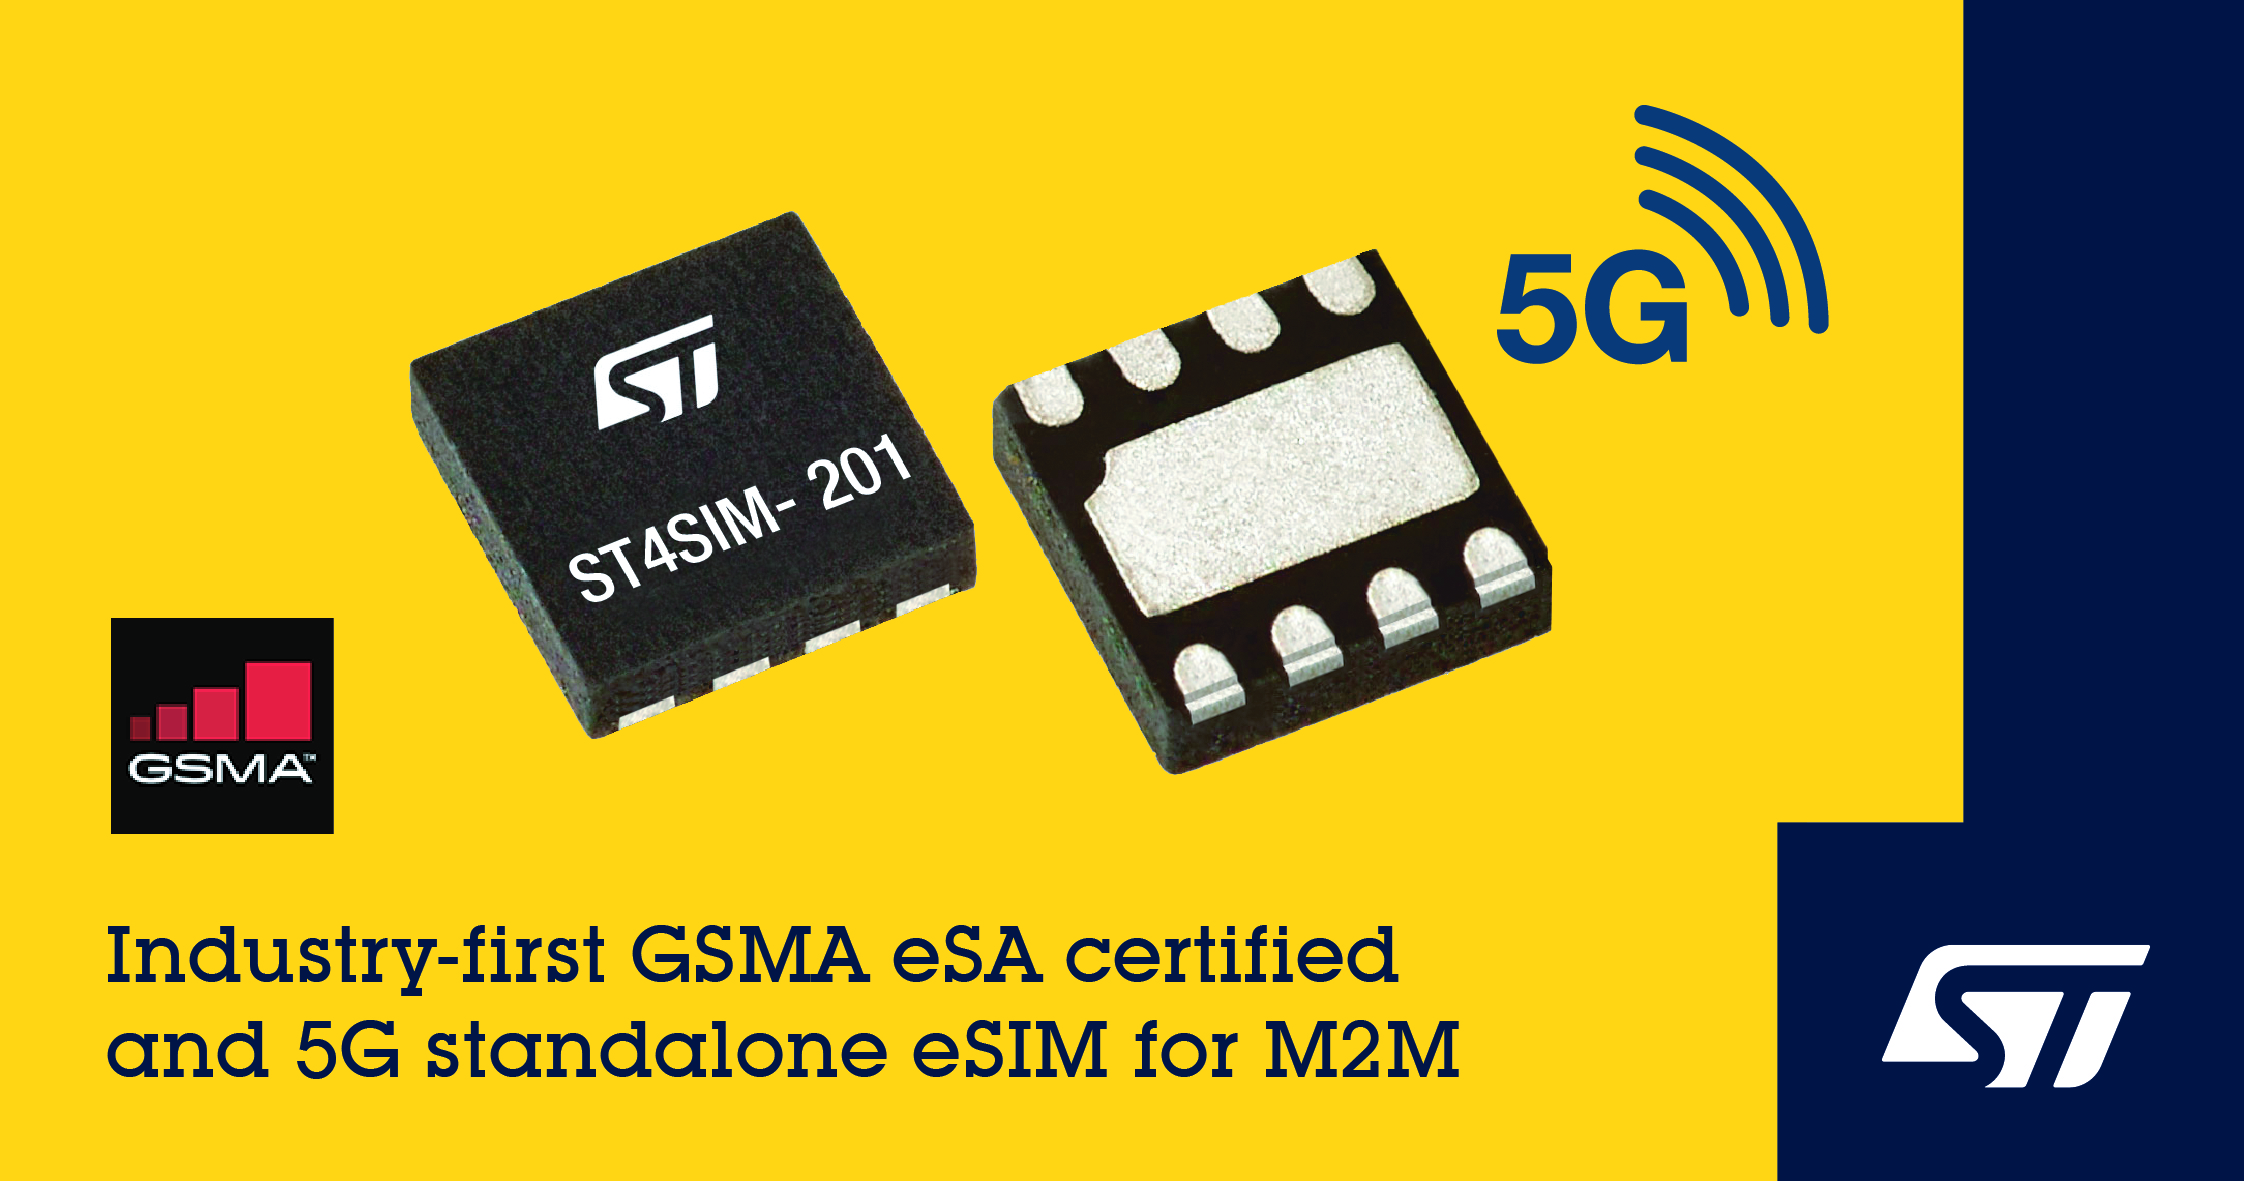 意法半导体5G M2M 嵌入式SIM卡芯片通过最新GSMA eSA(安全保障)认证